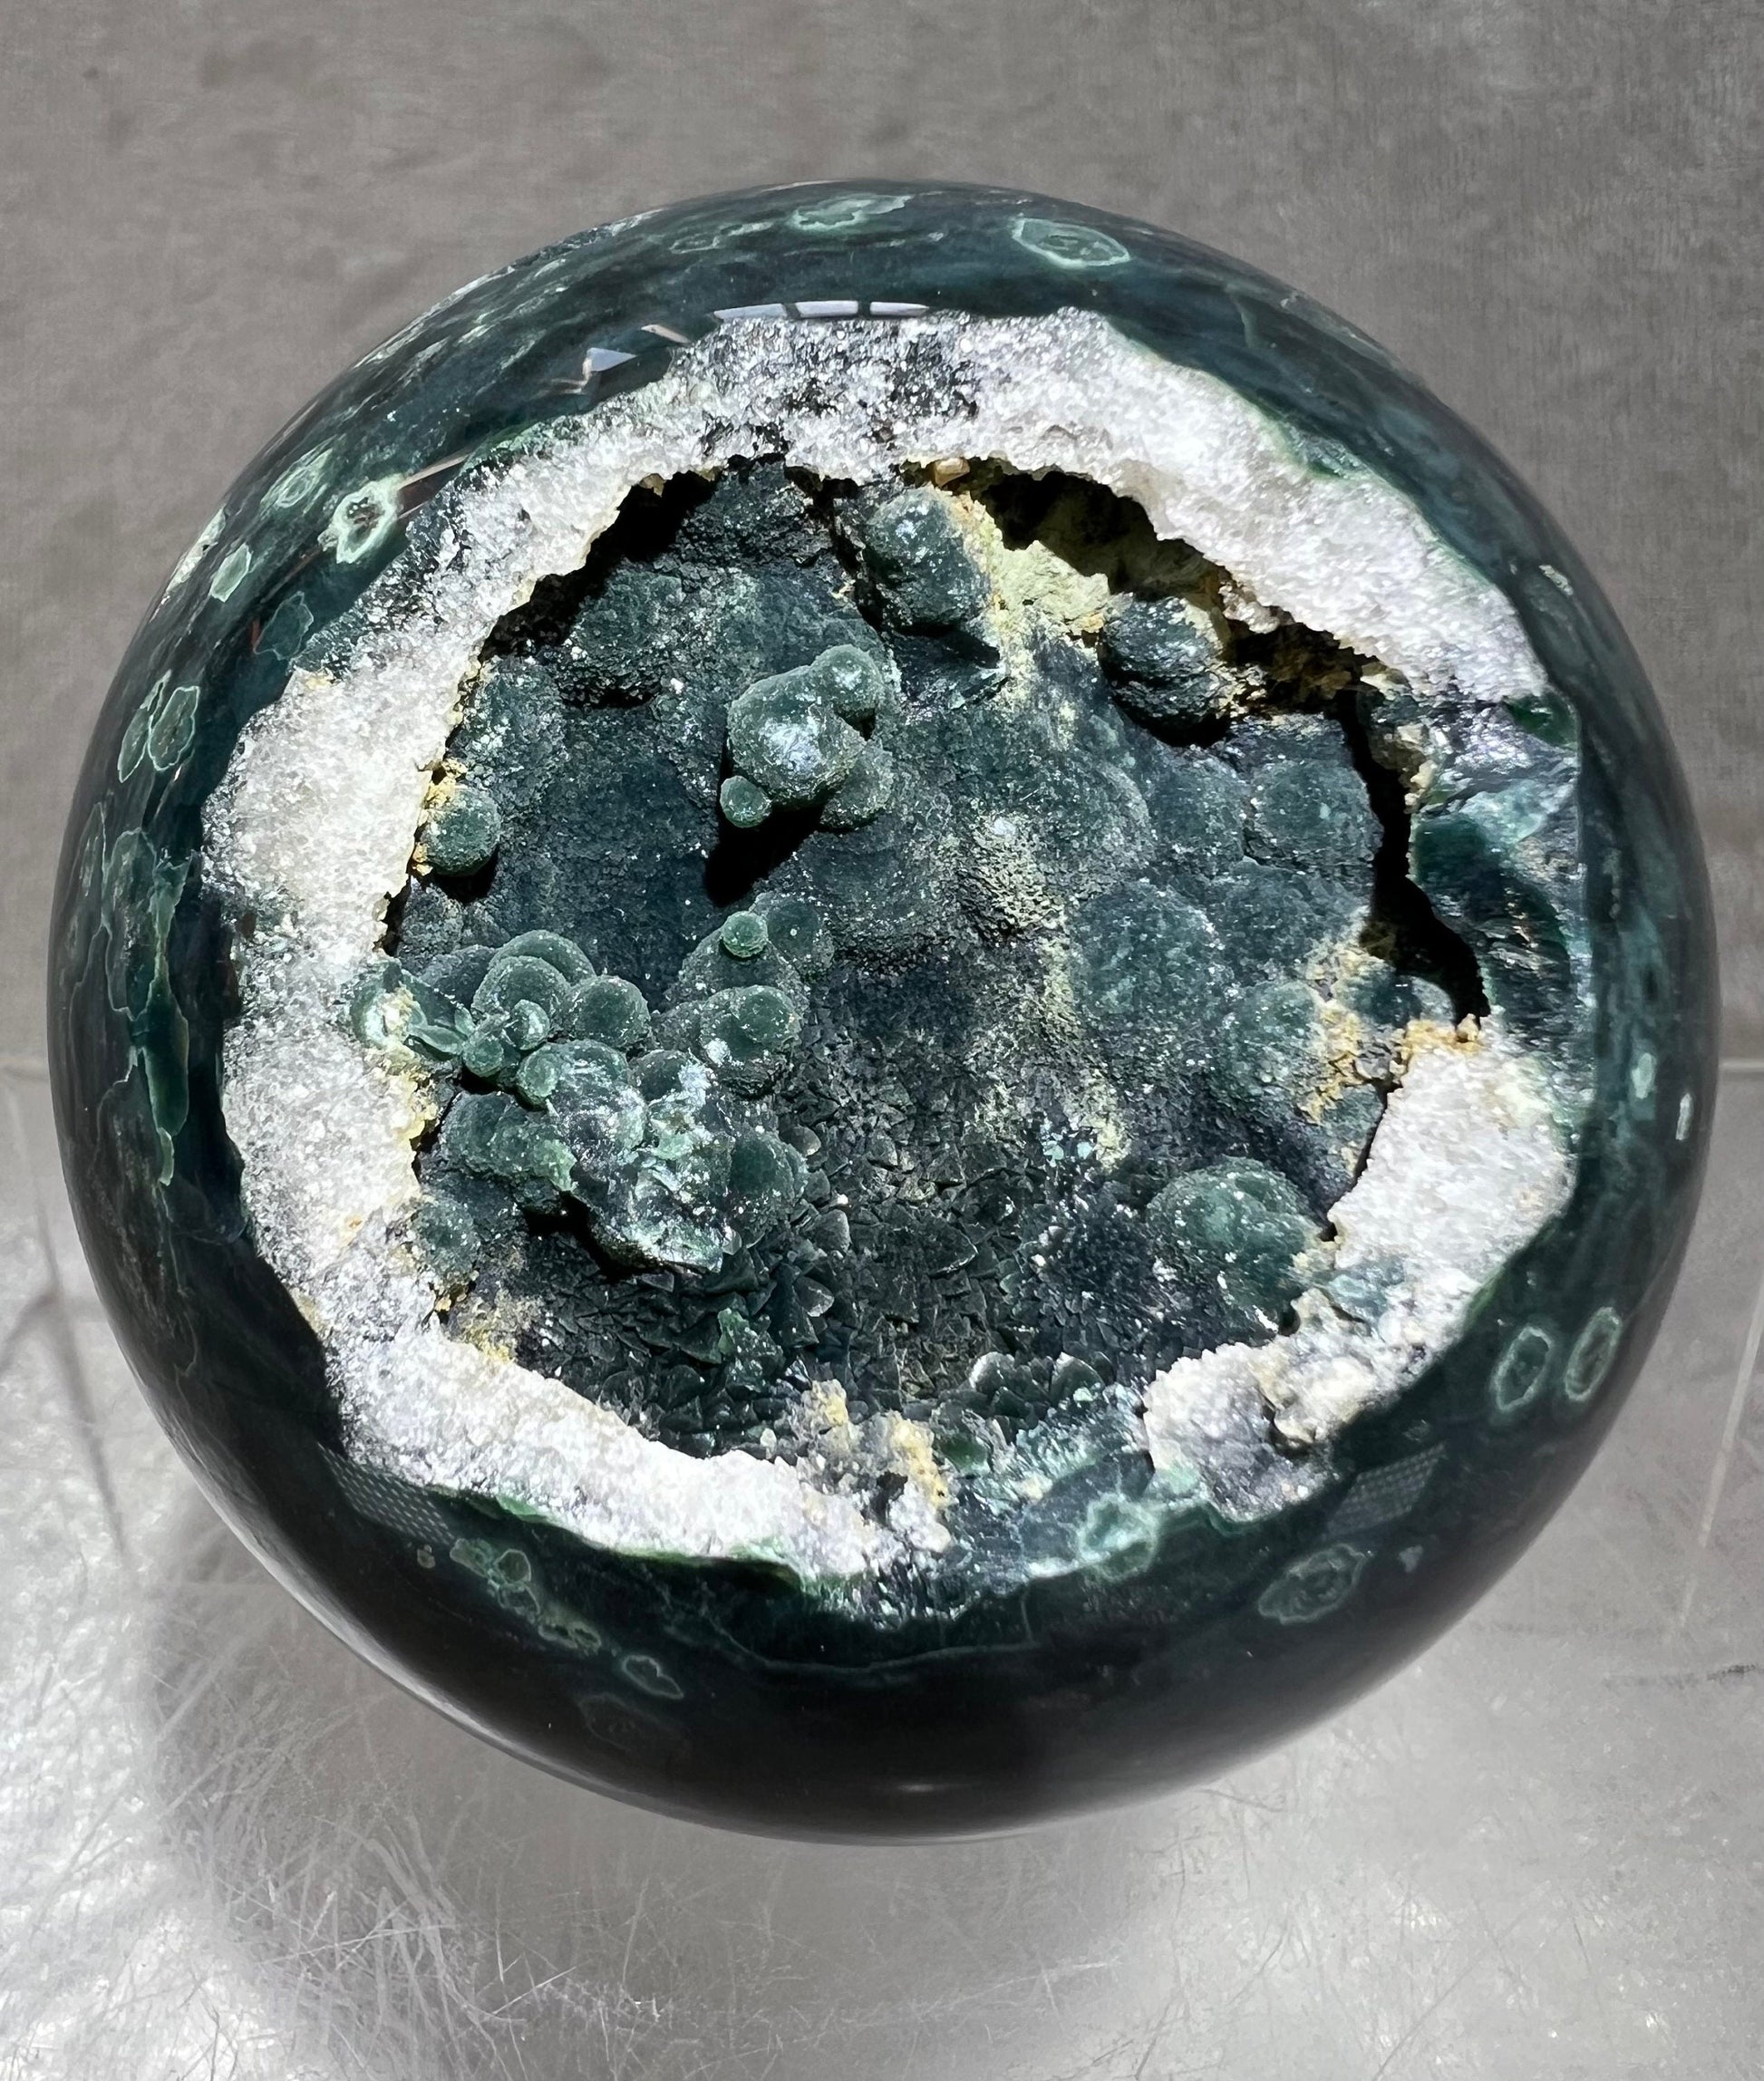 Gorgeous Druzy Ocean Jasper Sphere. 67mm. Rare Velvet Botryoidal Druzy. Amazing One Of A Kind Sphere.